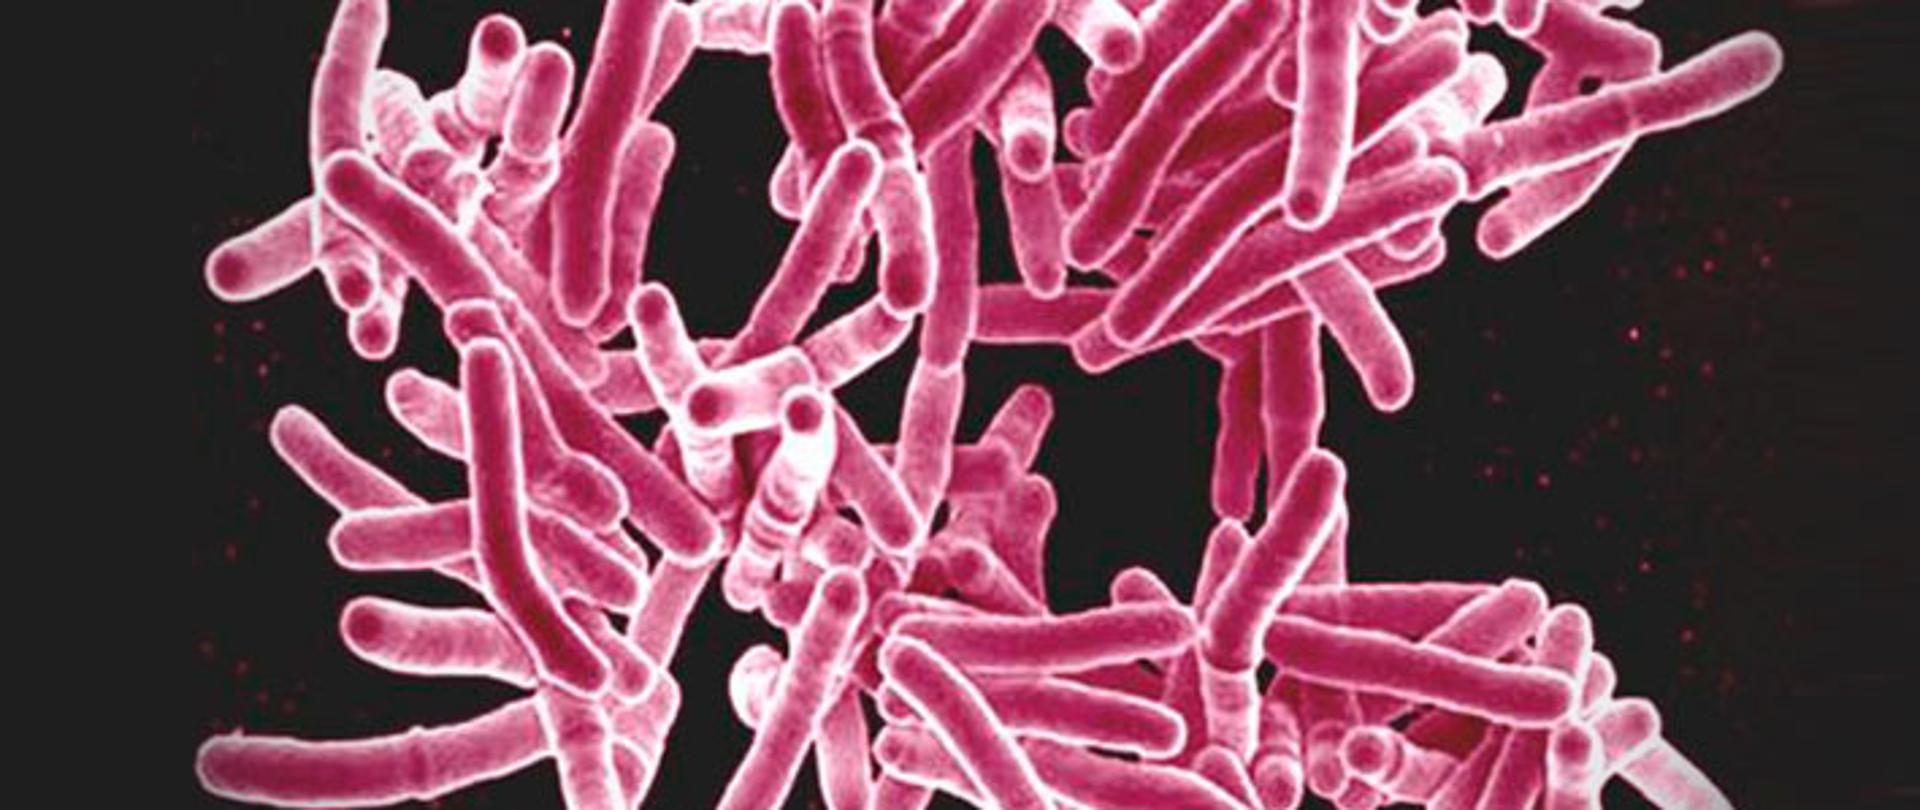 mikroskopowe zdjęcie bakterii gruźlicy